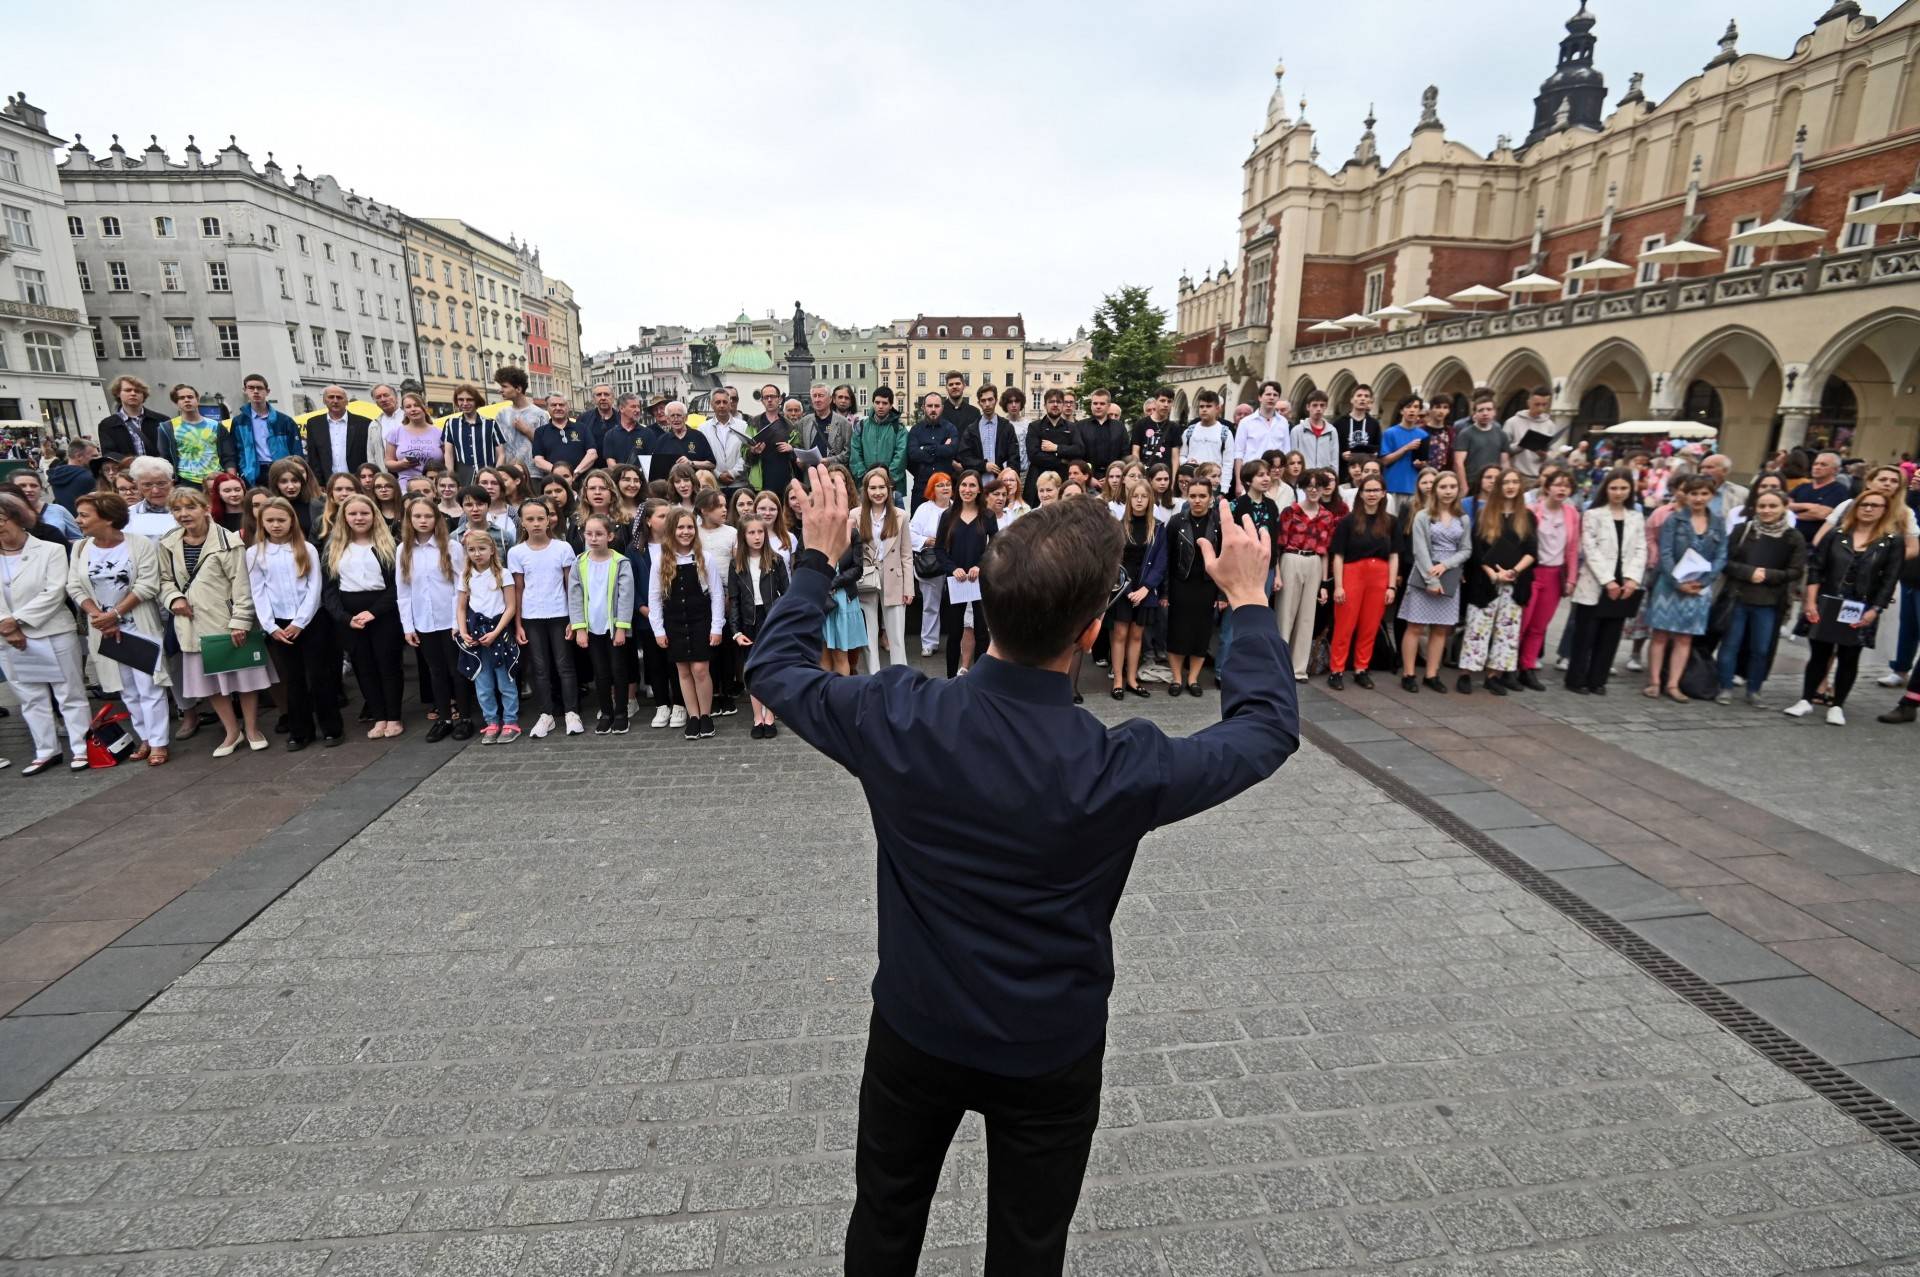 Kilkaset osób zaśpiewało na Rynku "Zacznij od Bacha", ruszył Wodecki Twist Festiwal